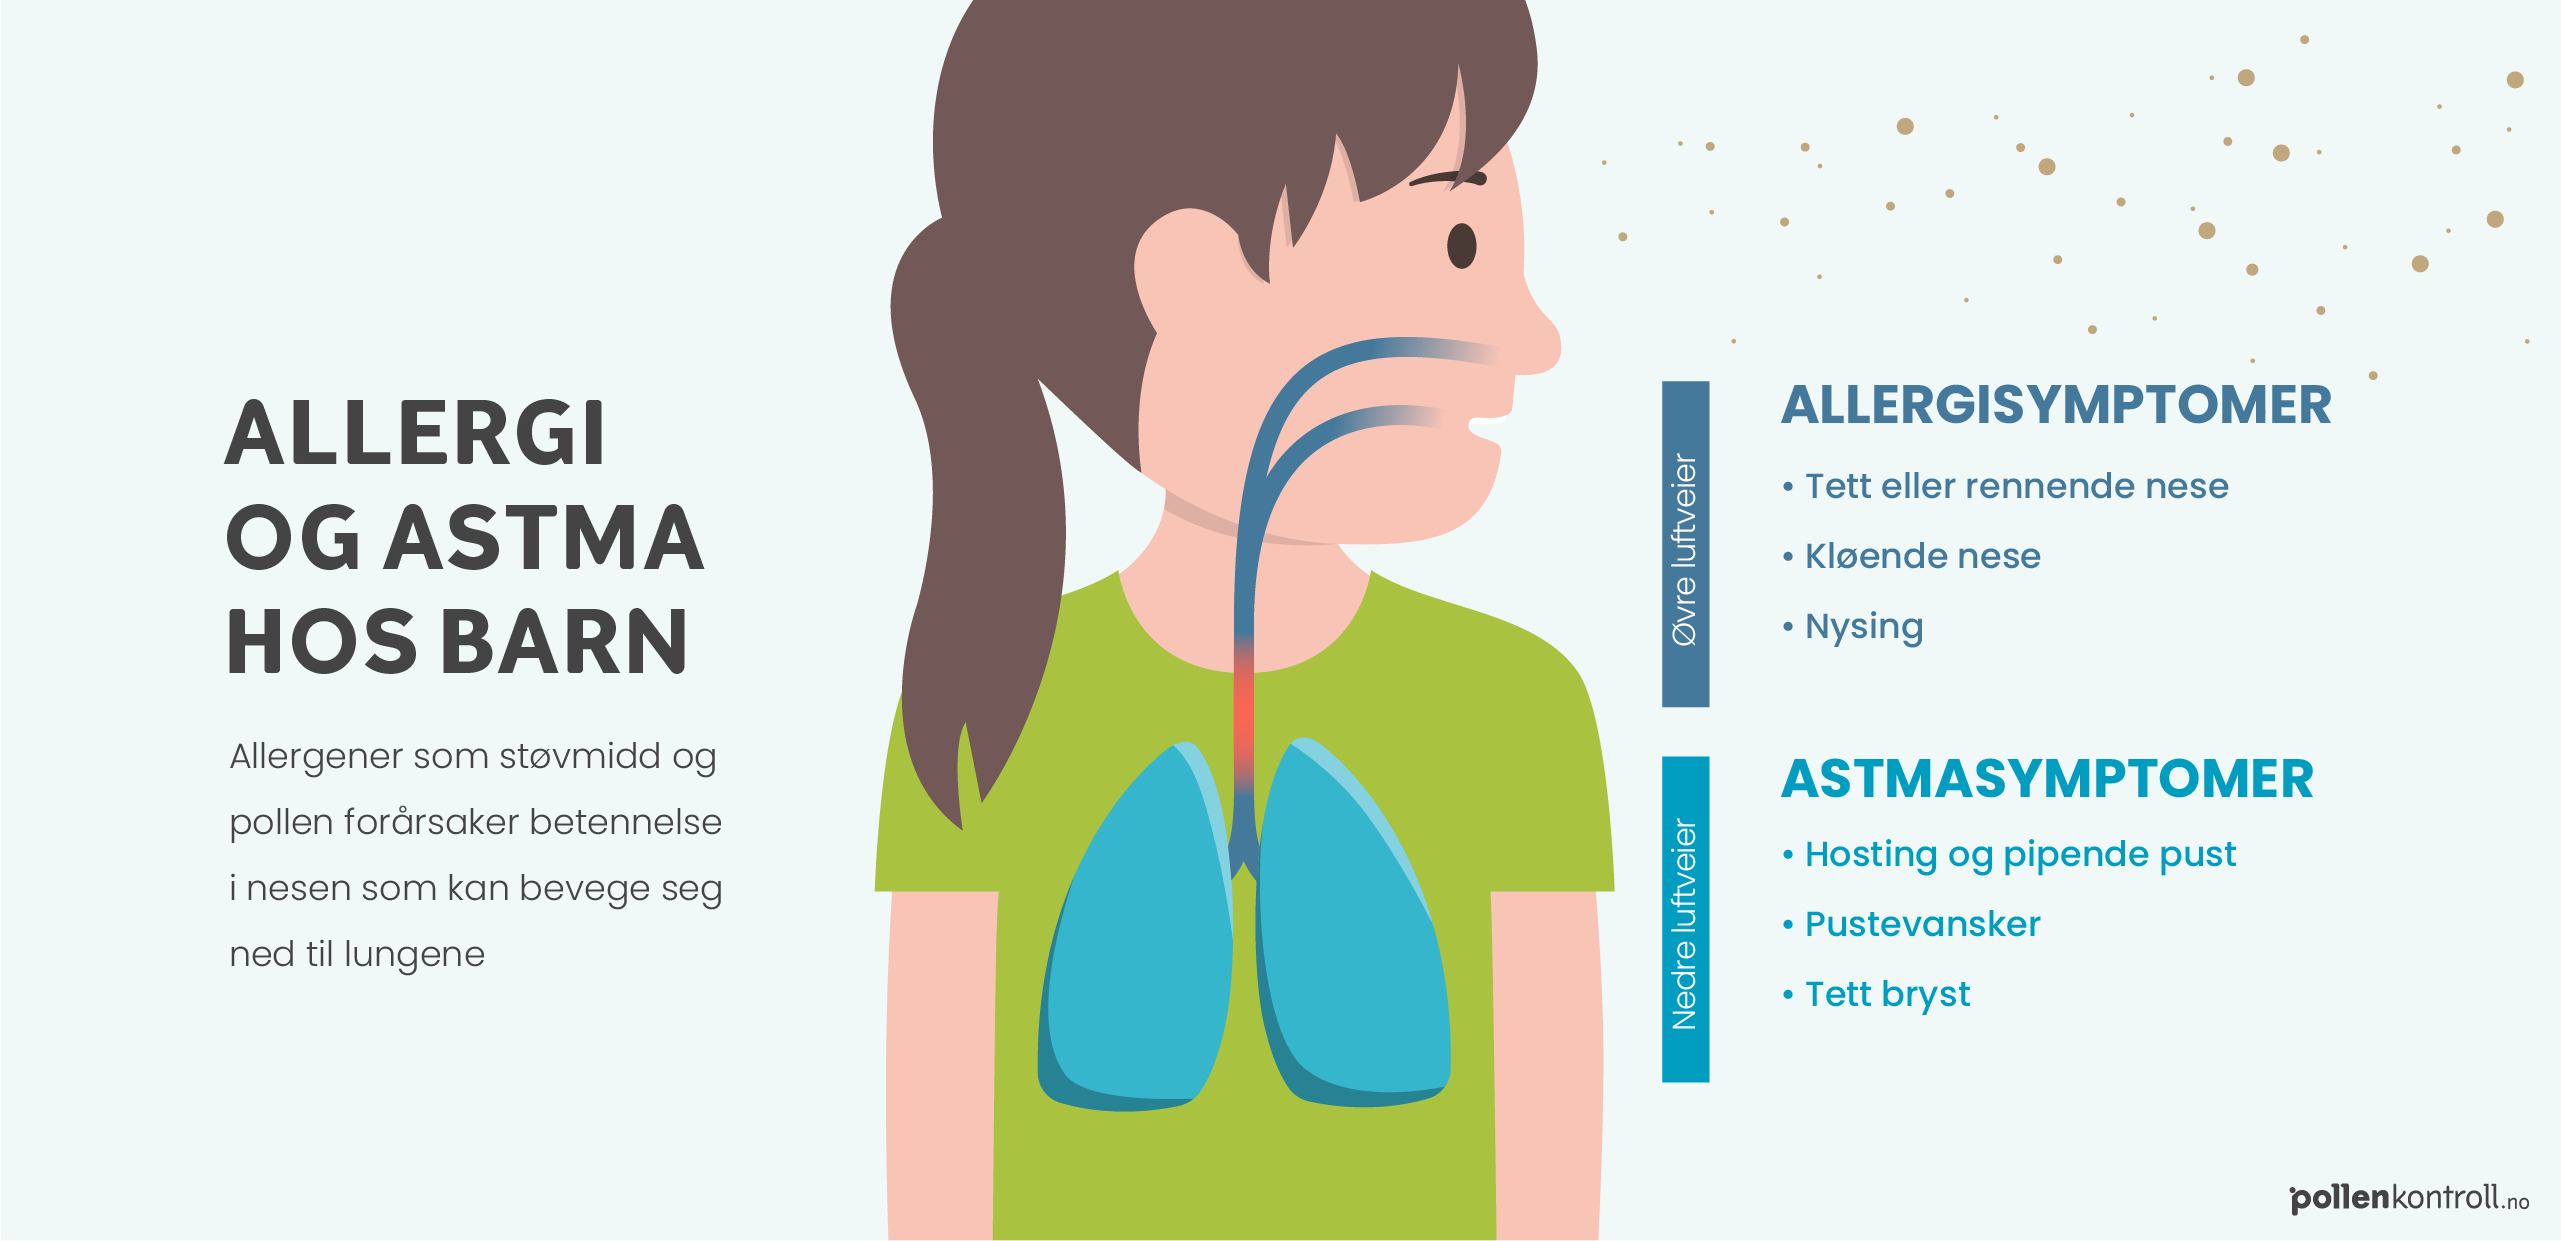 Infografikk som beskriver en mulig sammenheng mellom allergi og astma hos barn. Detaljer om inforgrafikken er listet opp under. 